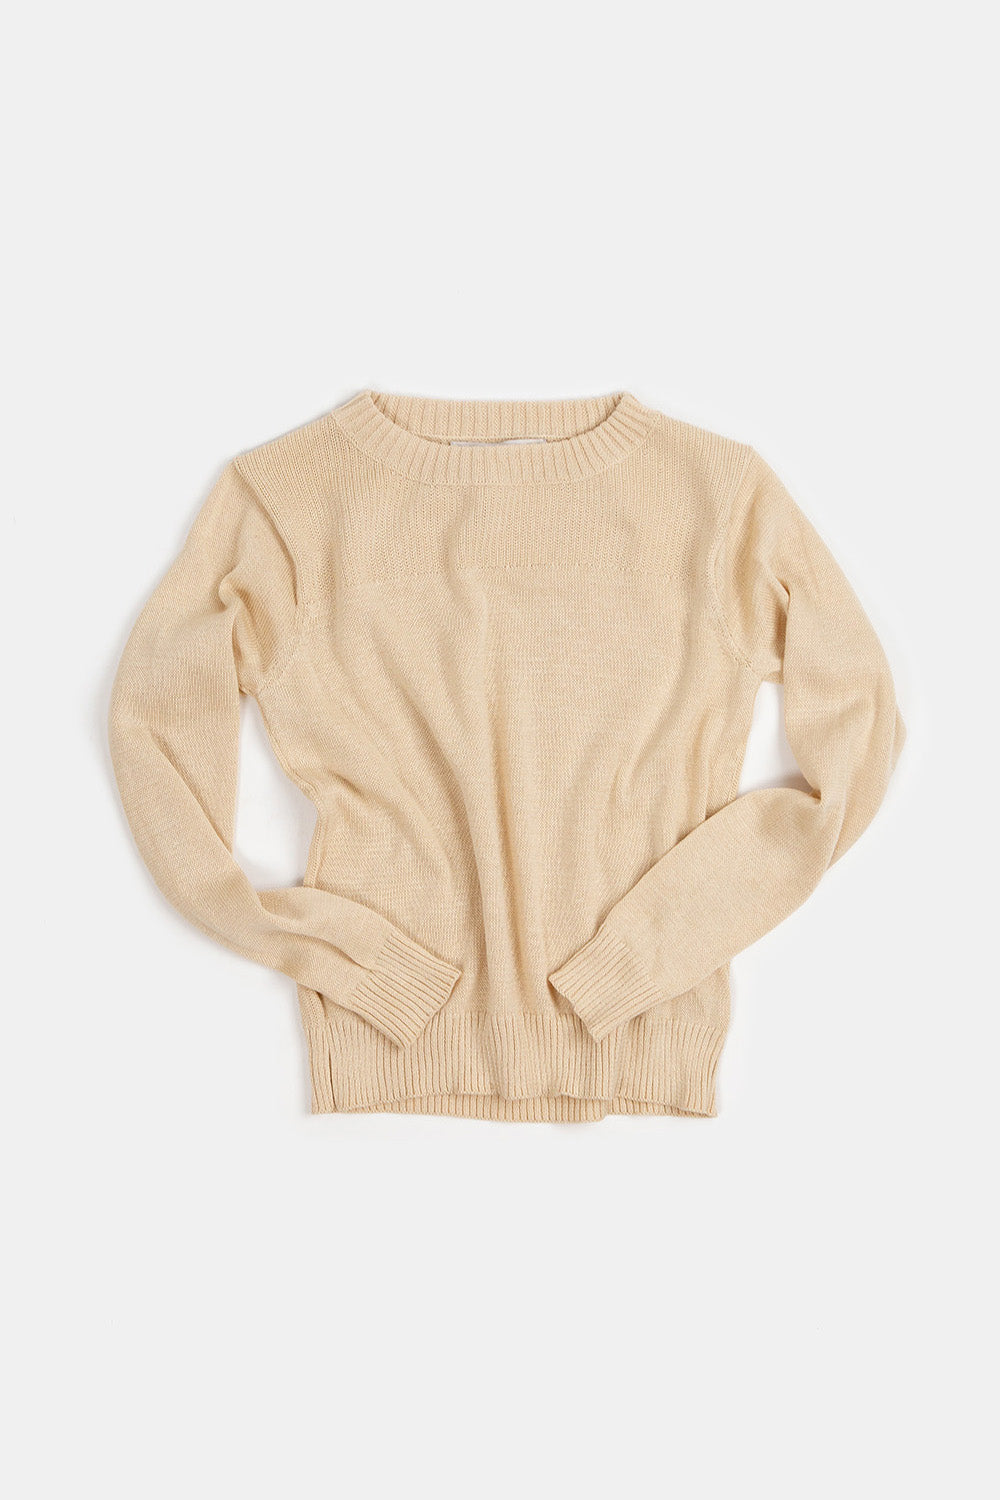 Isla Pima Cotton Sweater In Natural